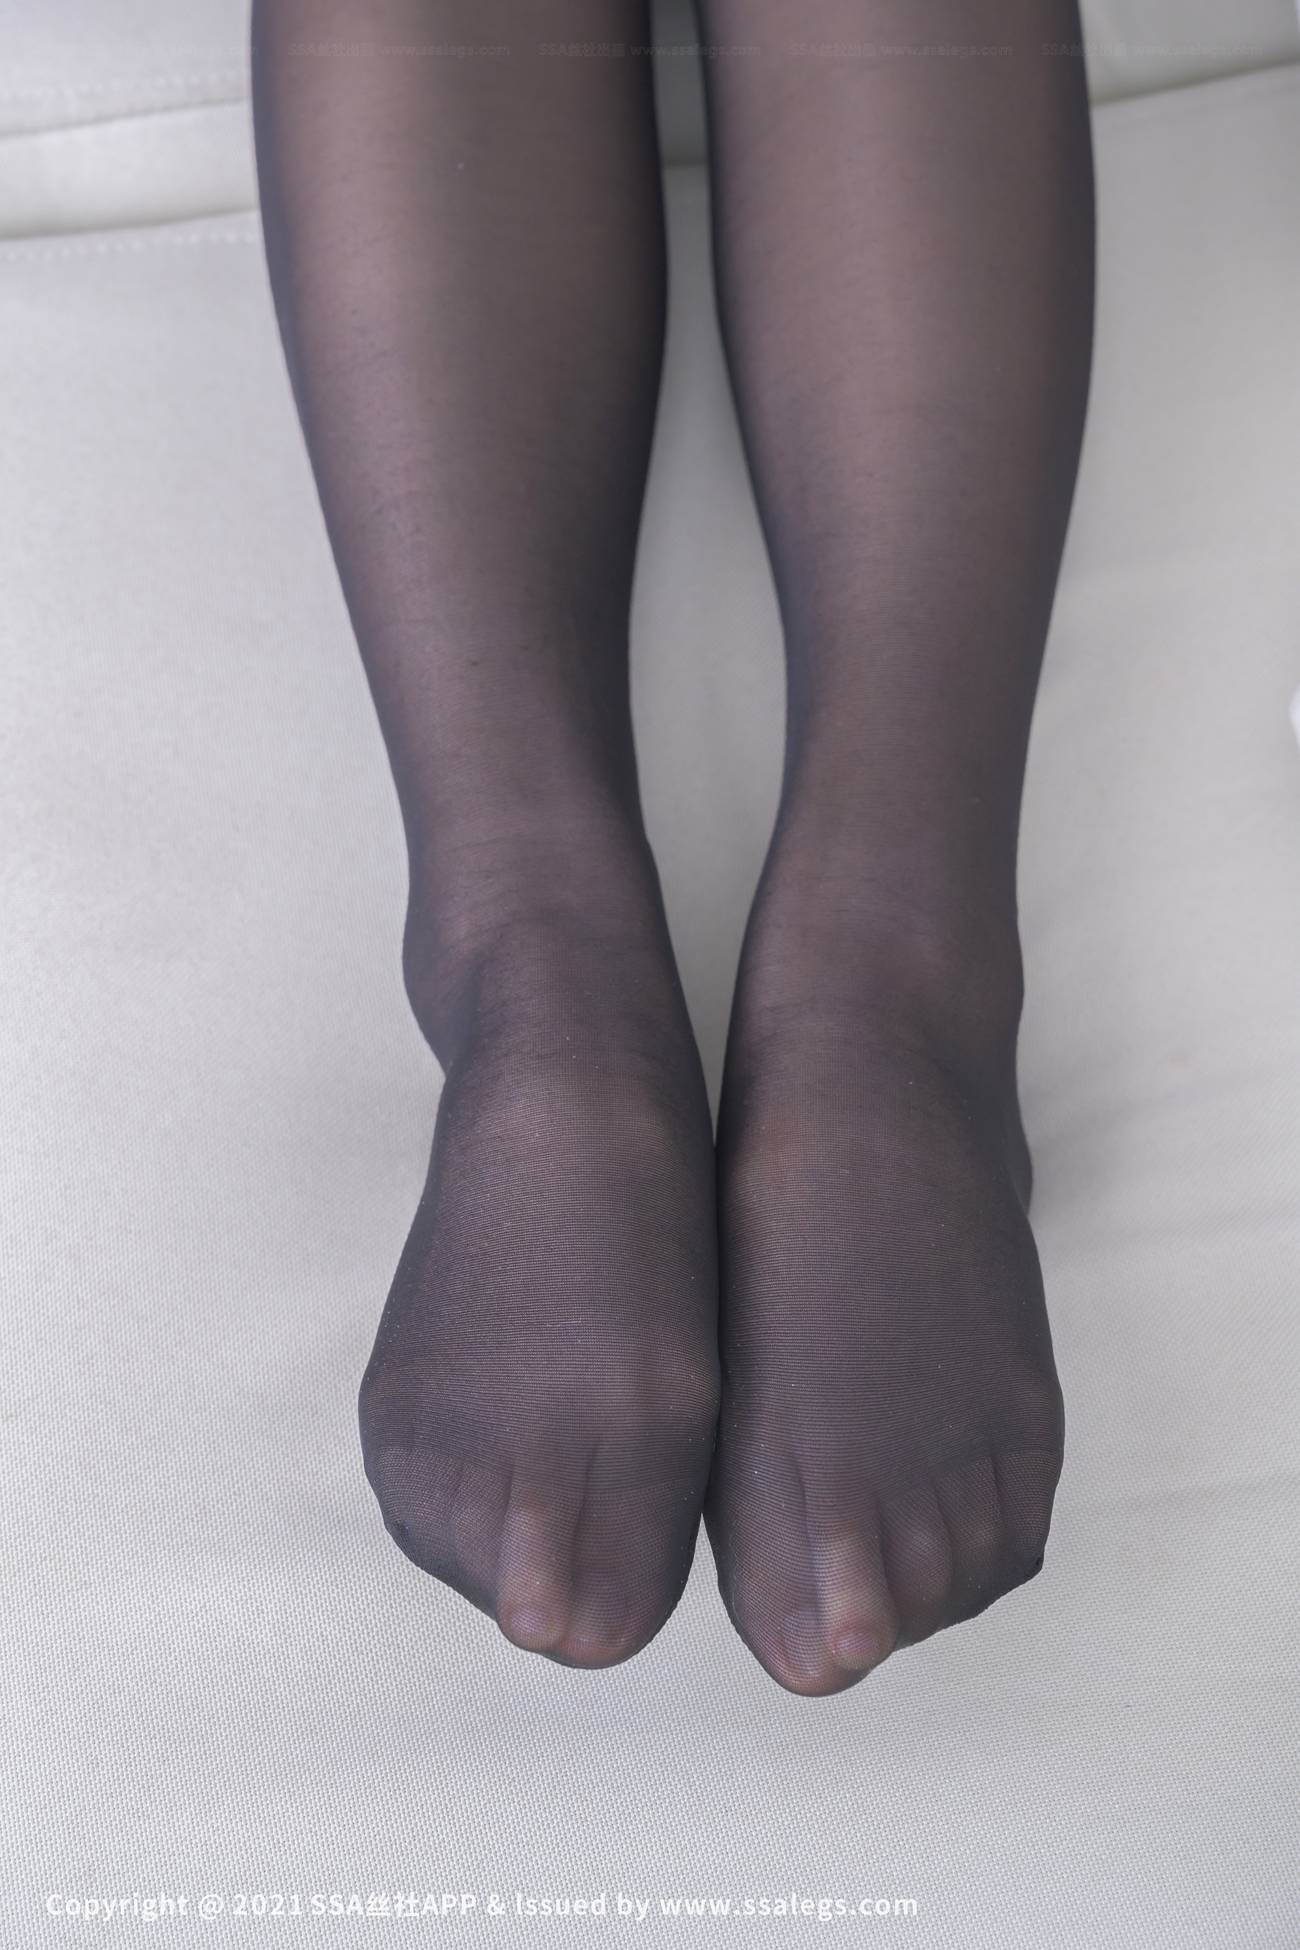 [SSA丝社]超清写真 NO.713 素人模特的彼基尼裆黑丝美脚（下）[106P]第16张